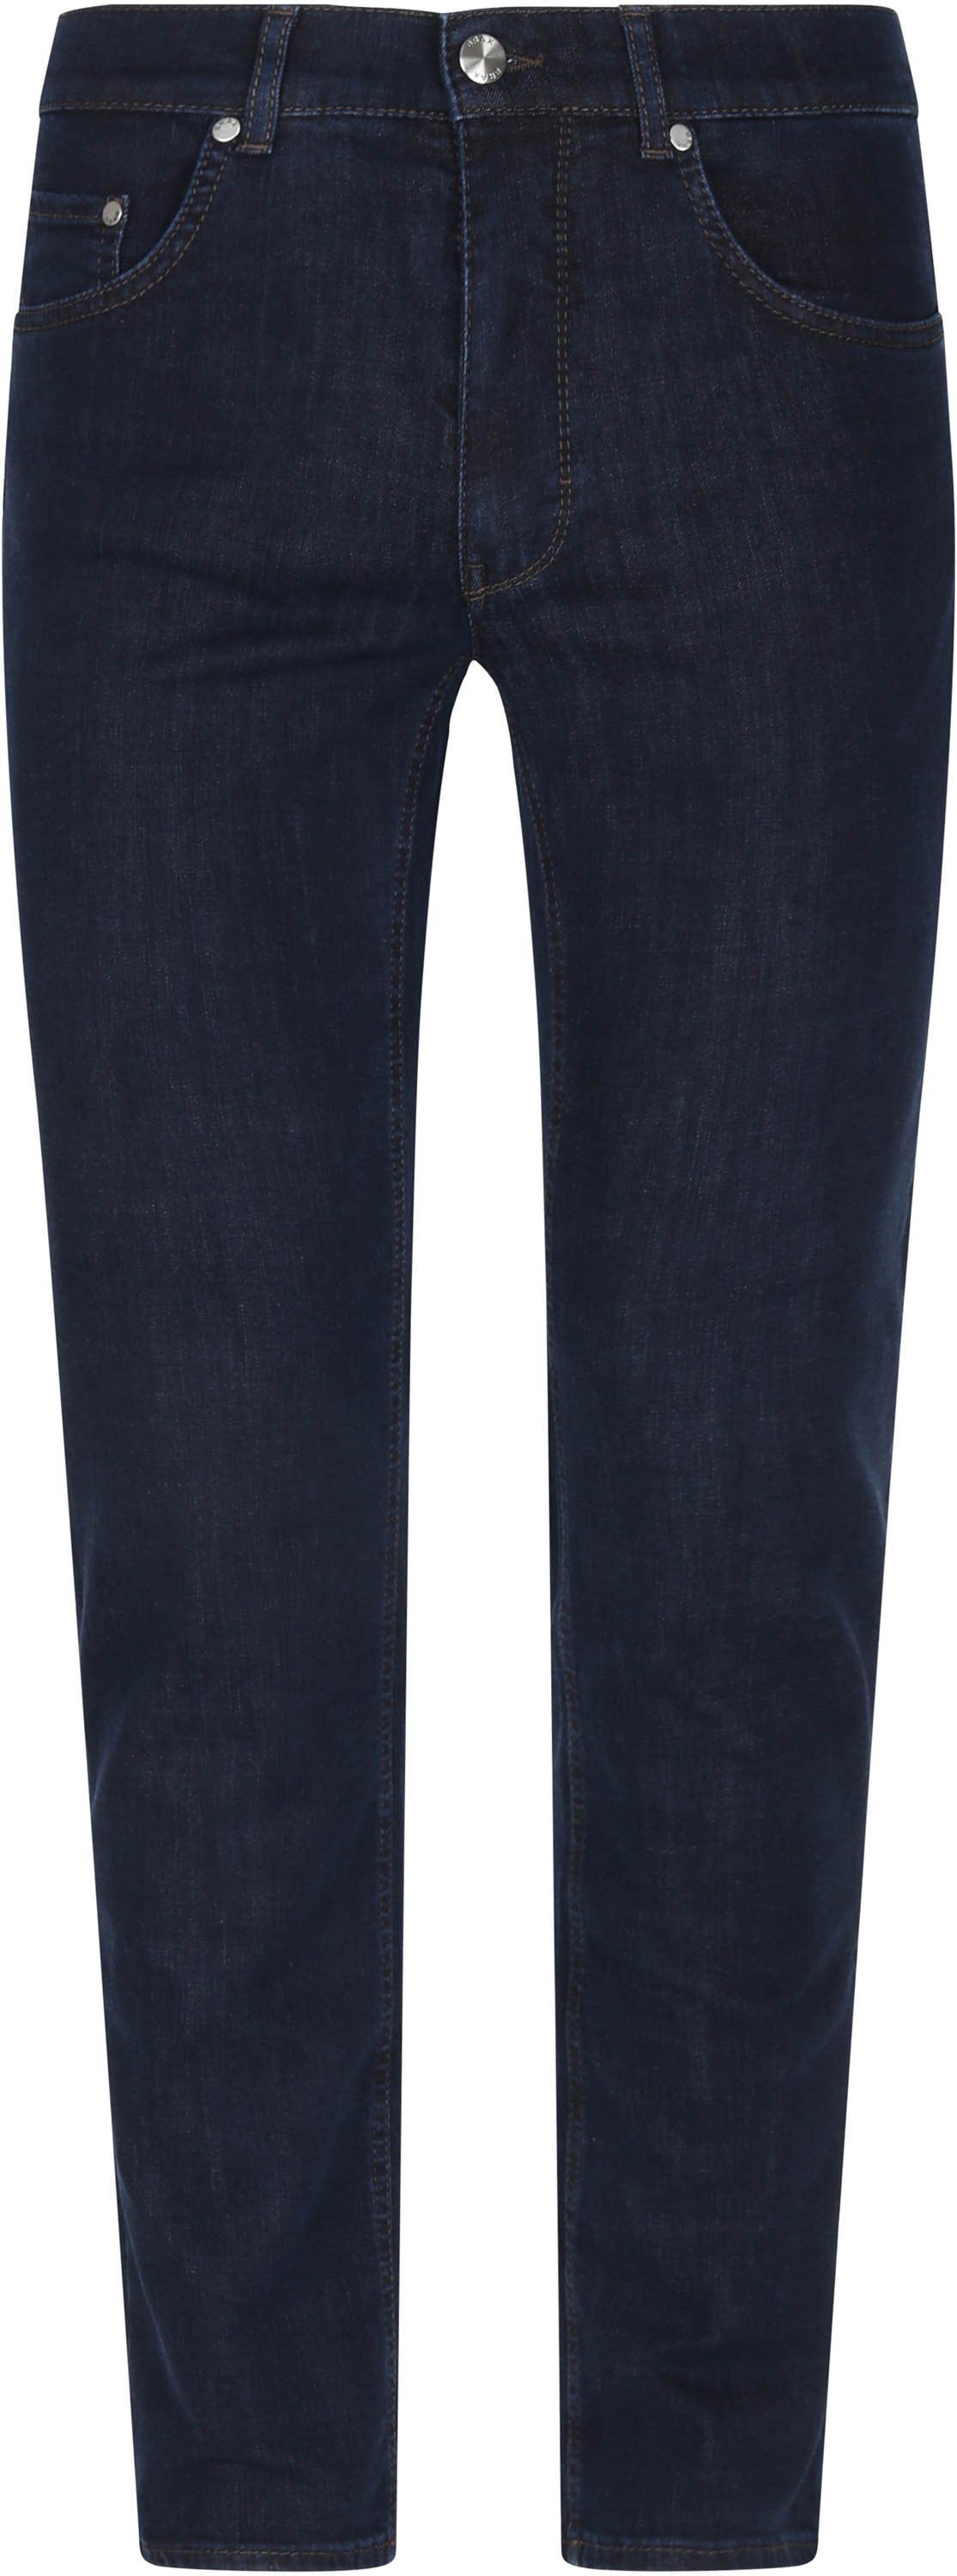 Brax Cooper Denim Jeans Dark Five Pocket Dark Blue Blue size W 31